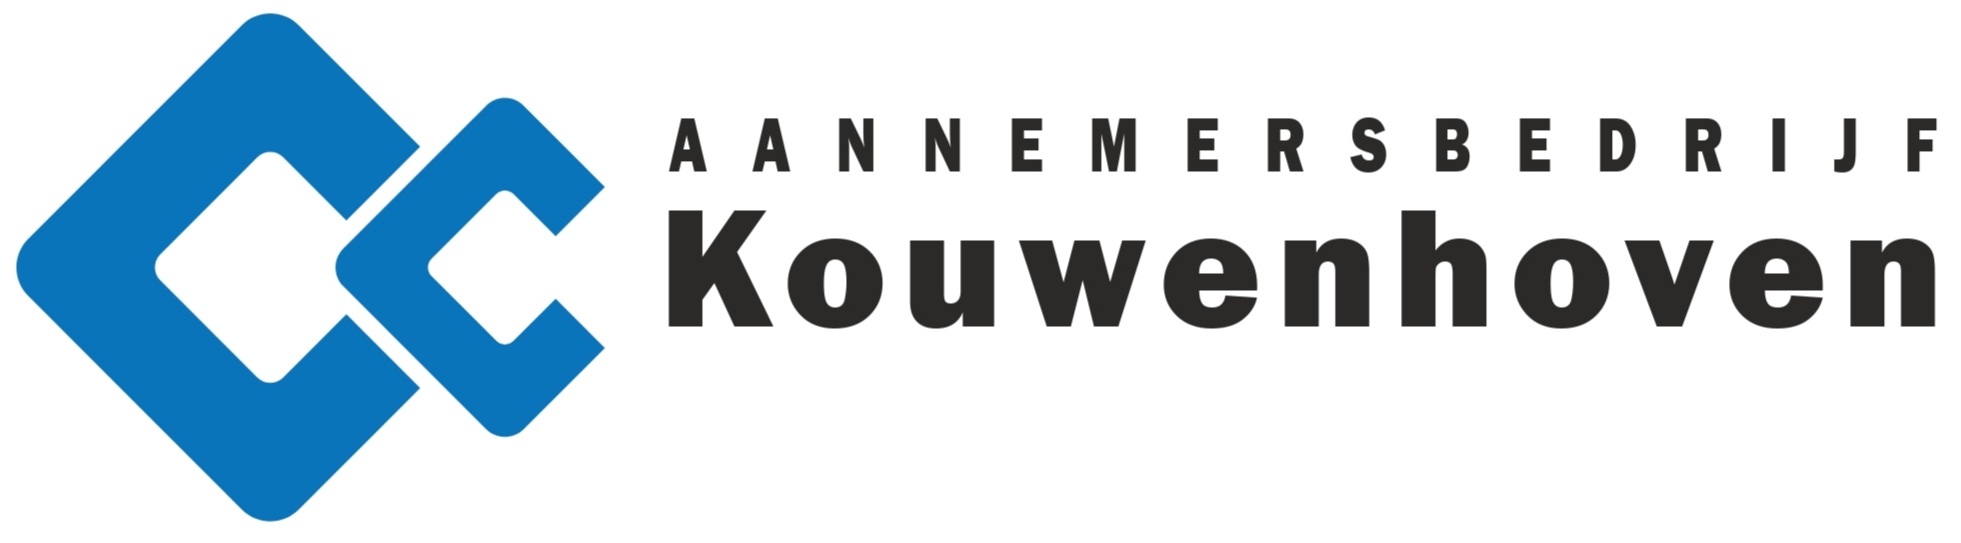 CC Kouwenhoven